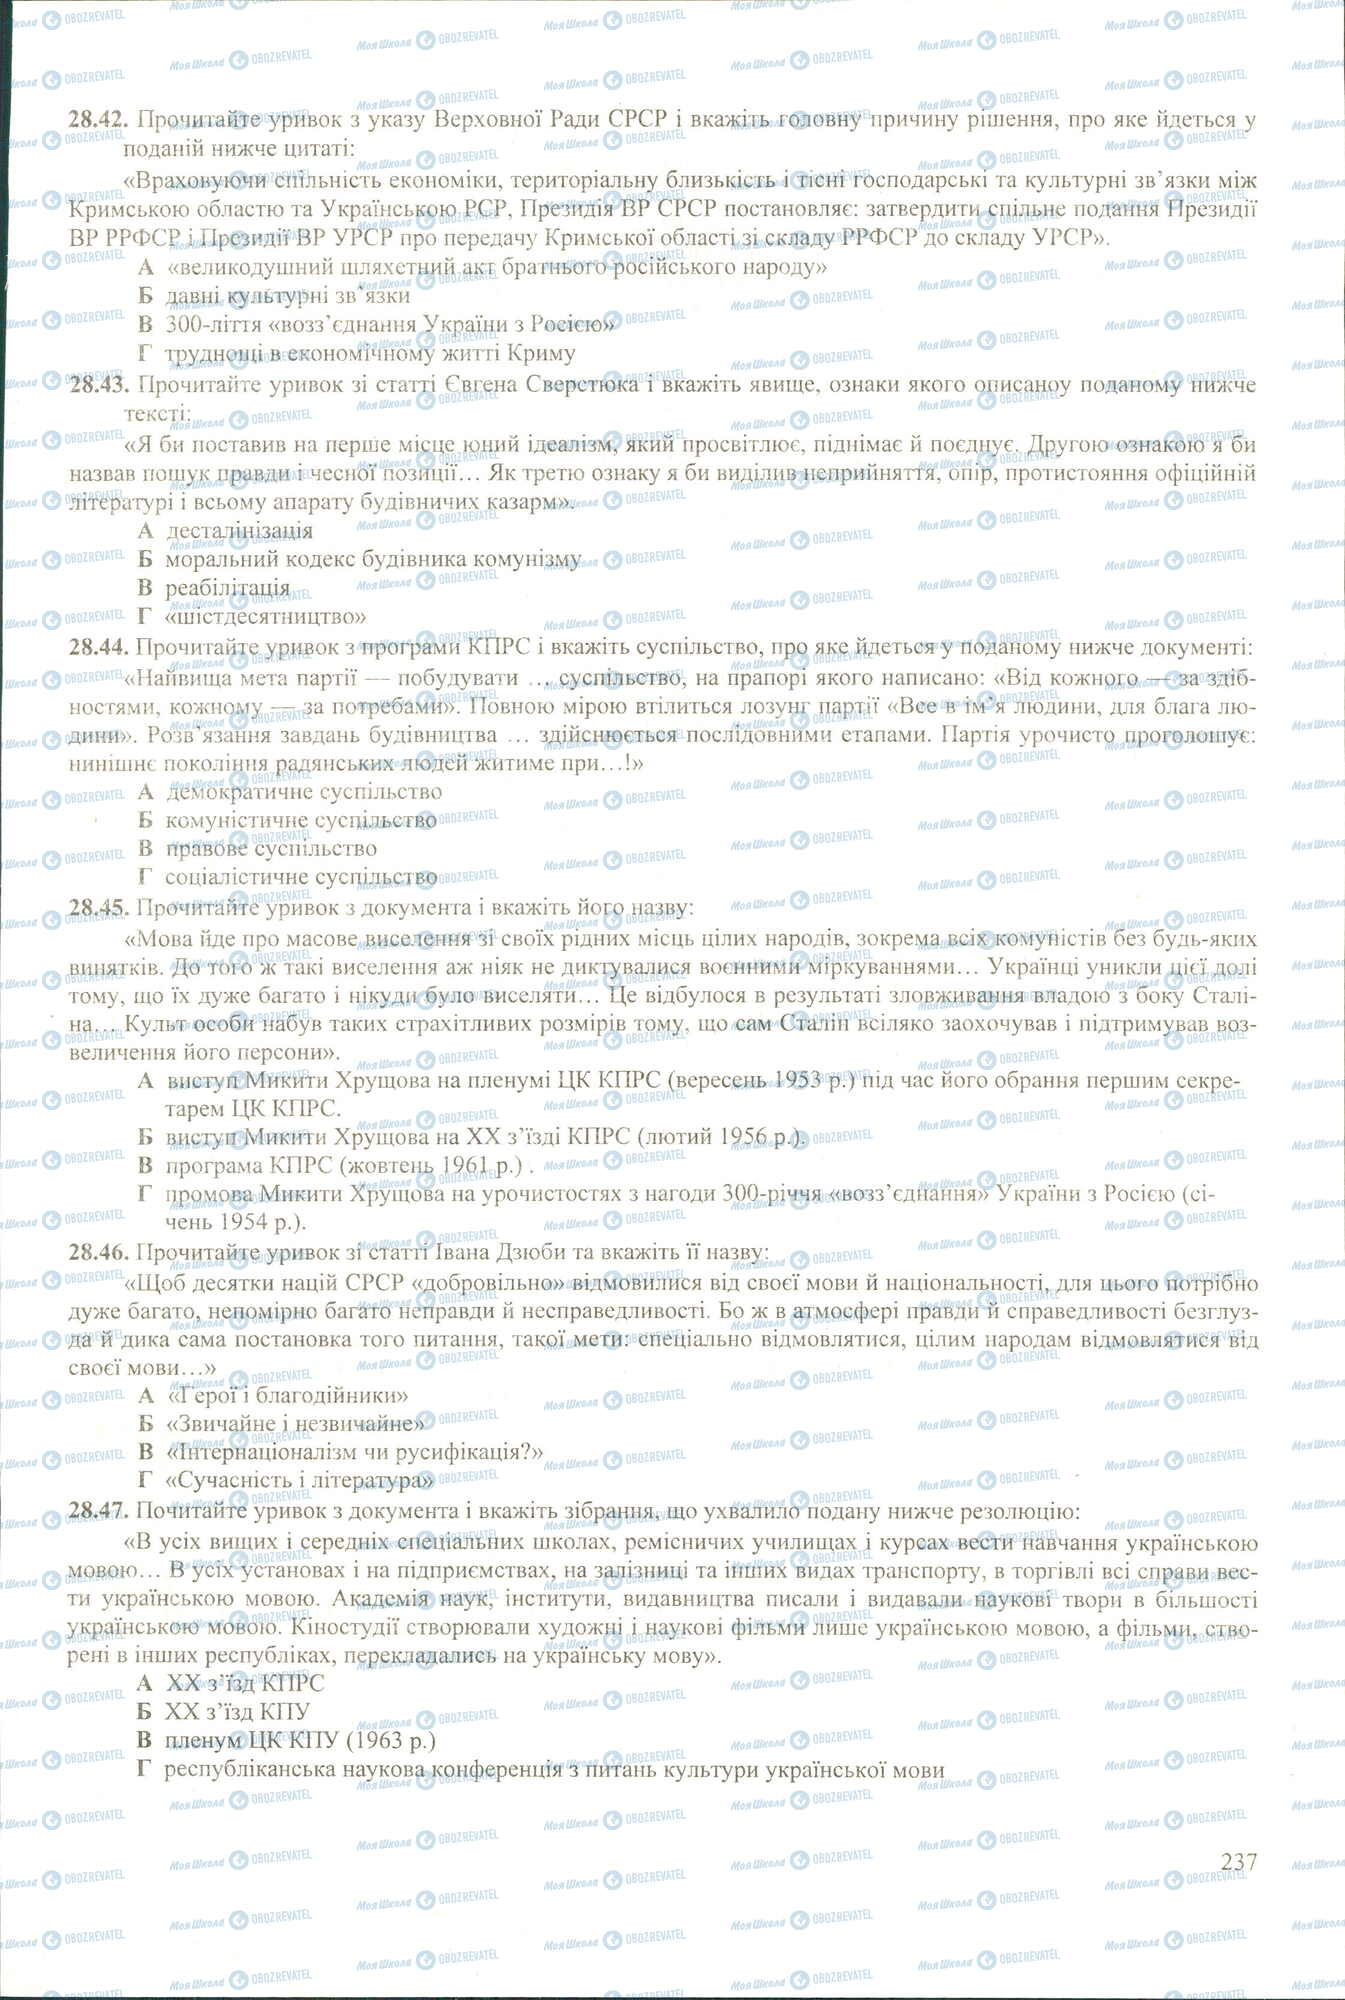 ЗНО История Украины 11 класс страница 42-47